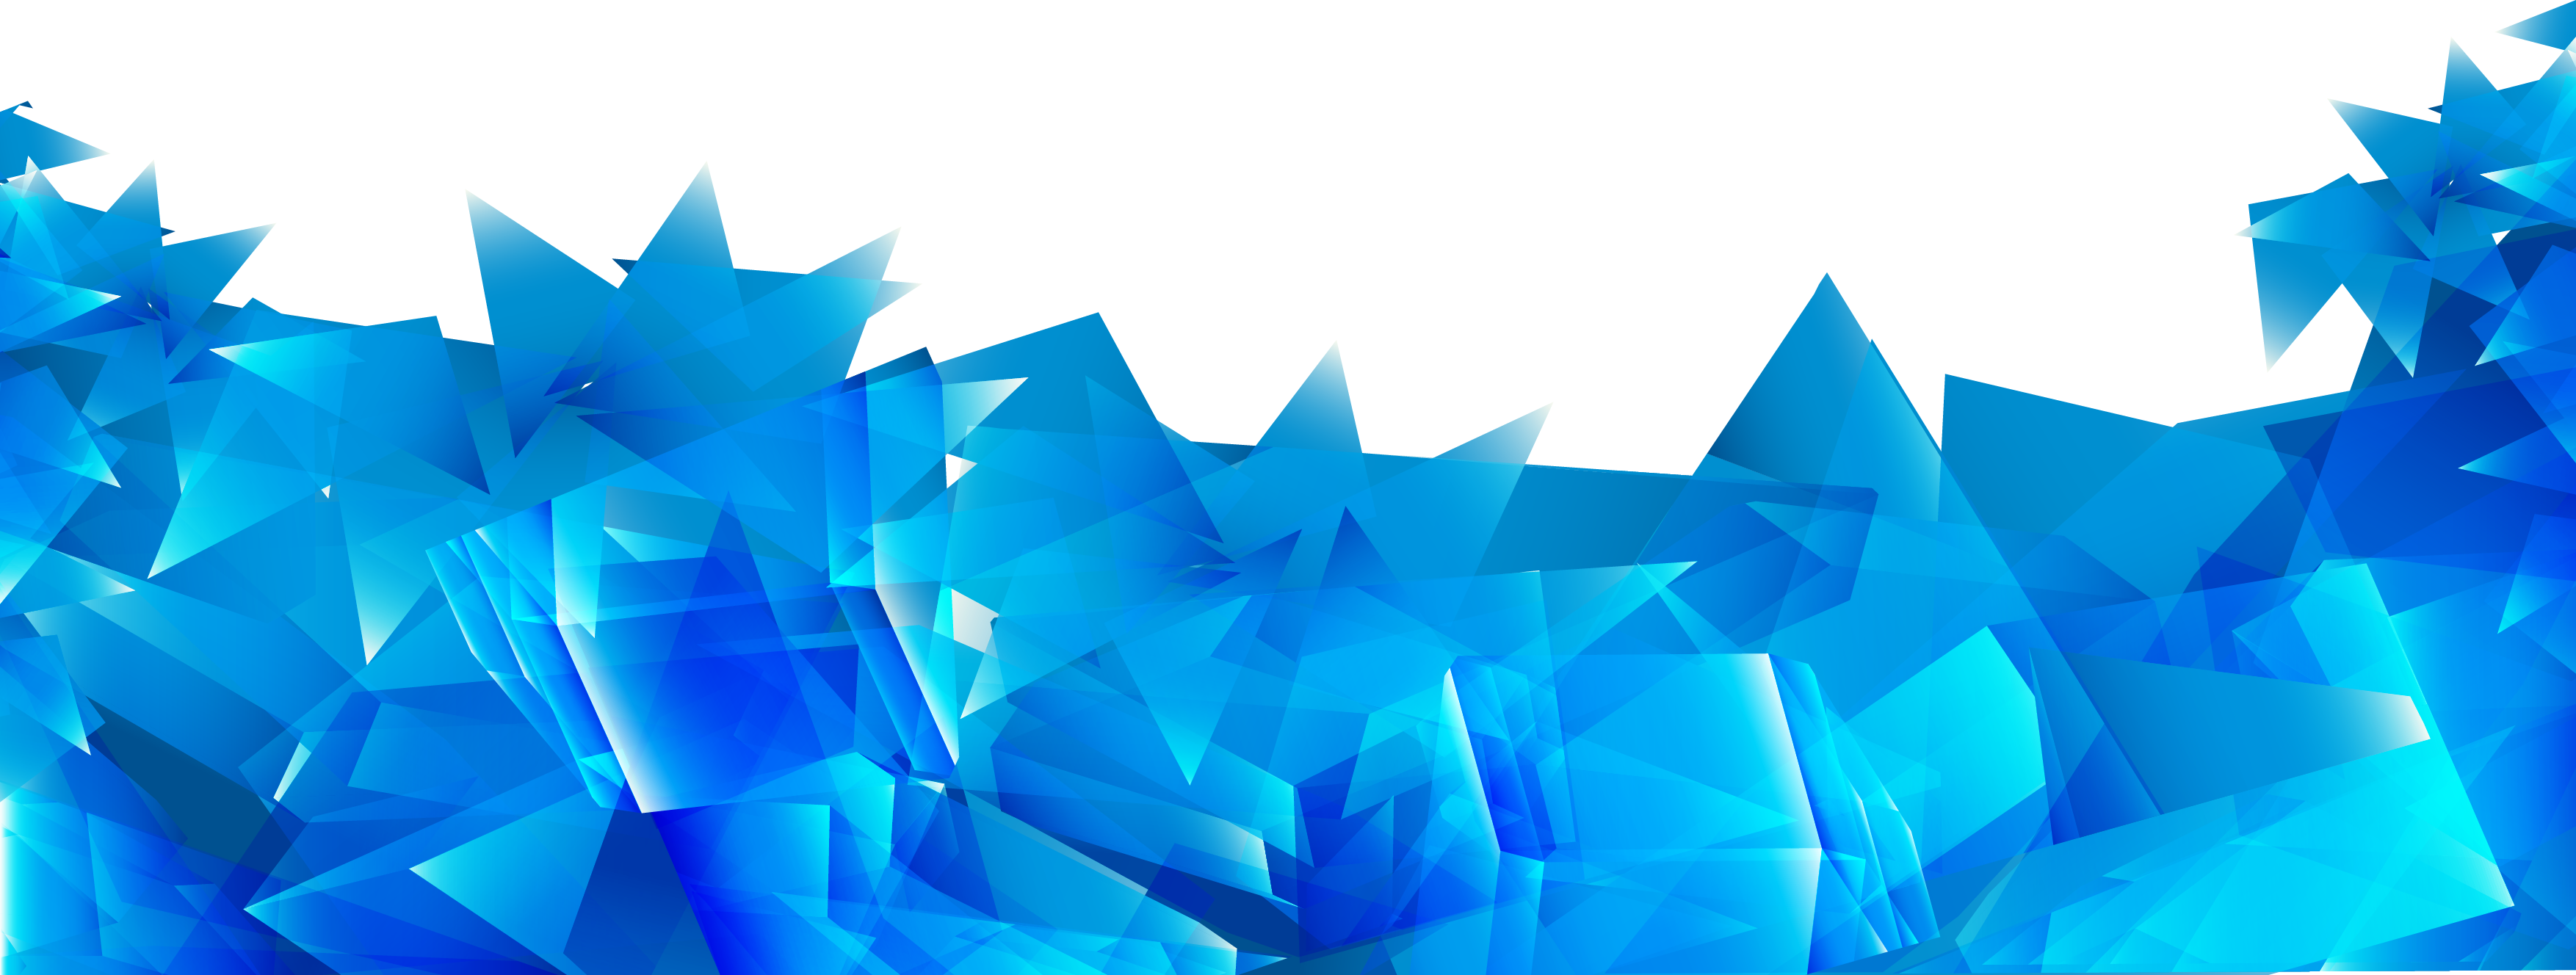 Textura abstracta azul PNG clipart